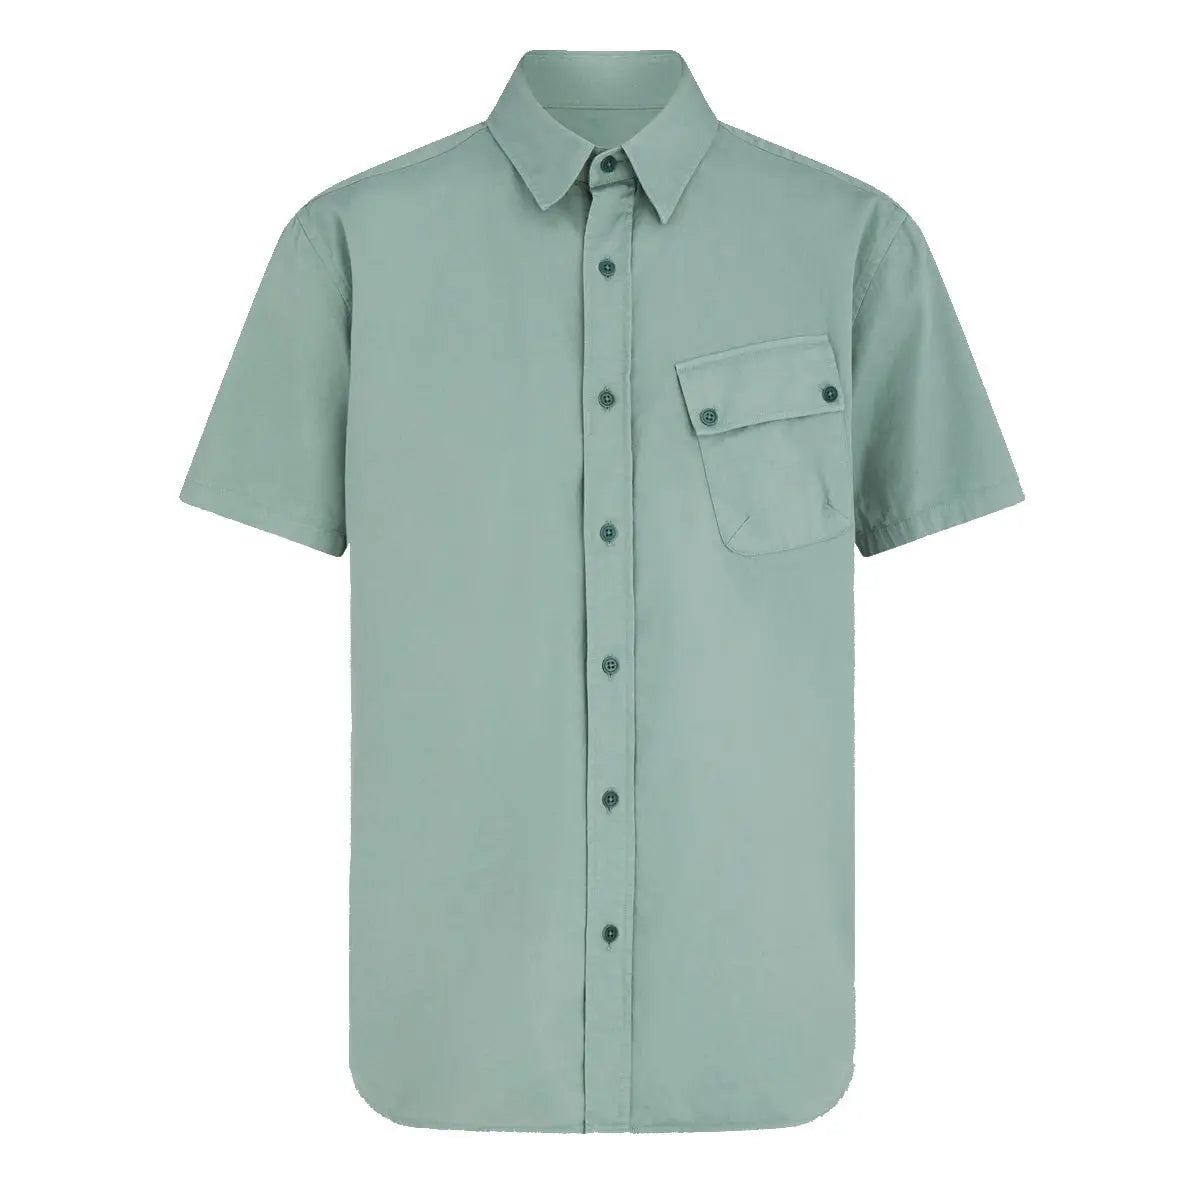 Steel Green ‘Pitch’ Cotton Twill Short Sleeved Shirt  Belstaff   